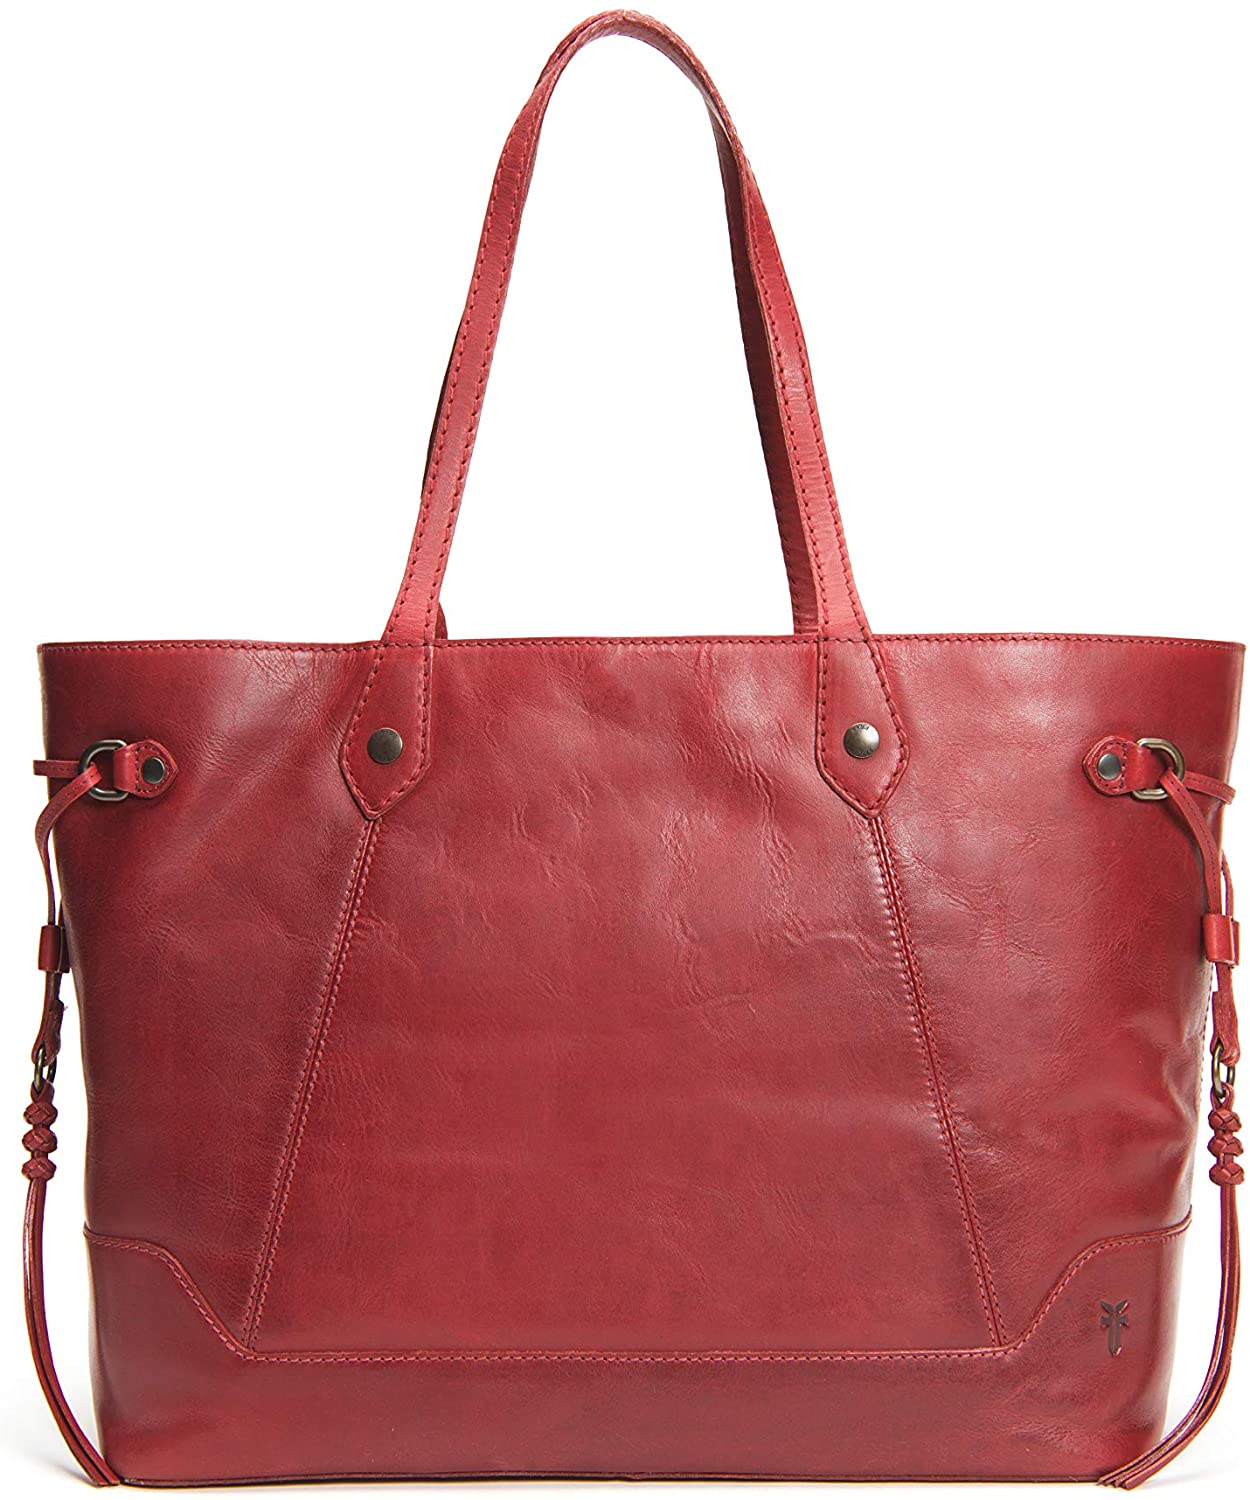 Frye Leather Melissa Shoulder Bag - QVC.com